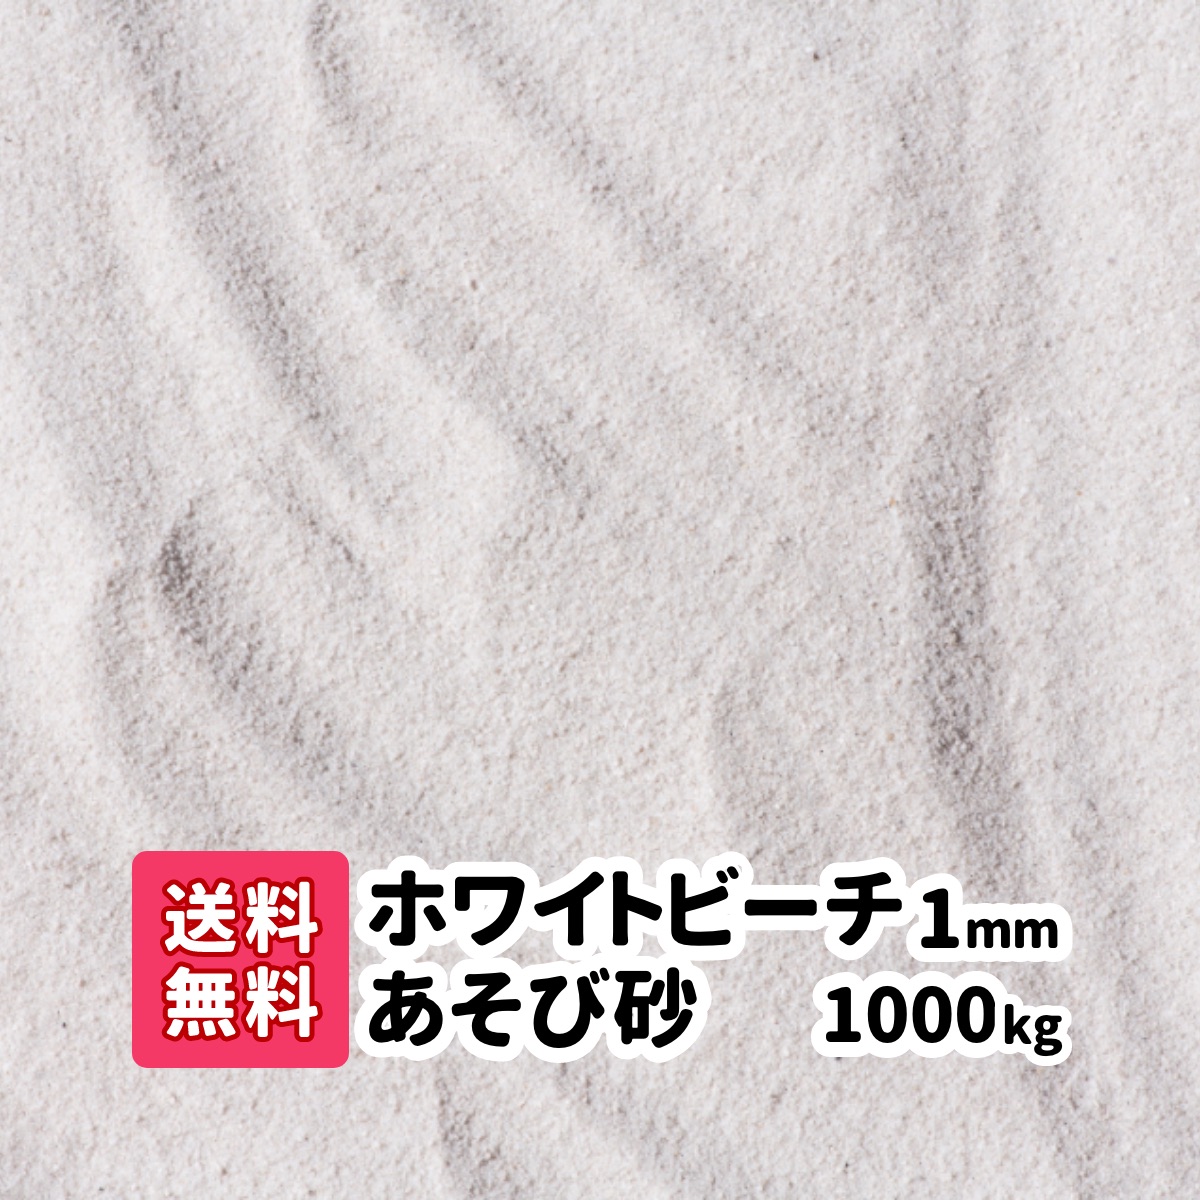 【楽天市場】【送料無料】60kg(20kg袋×3) ホワイトビーチ遊び砂 